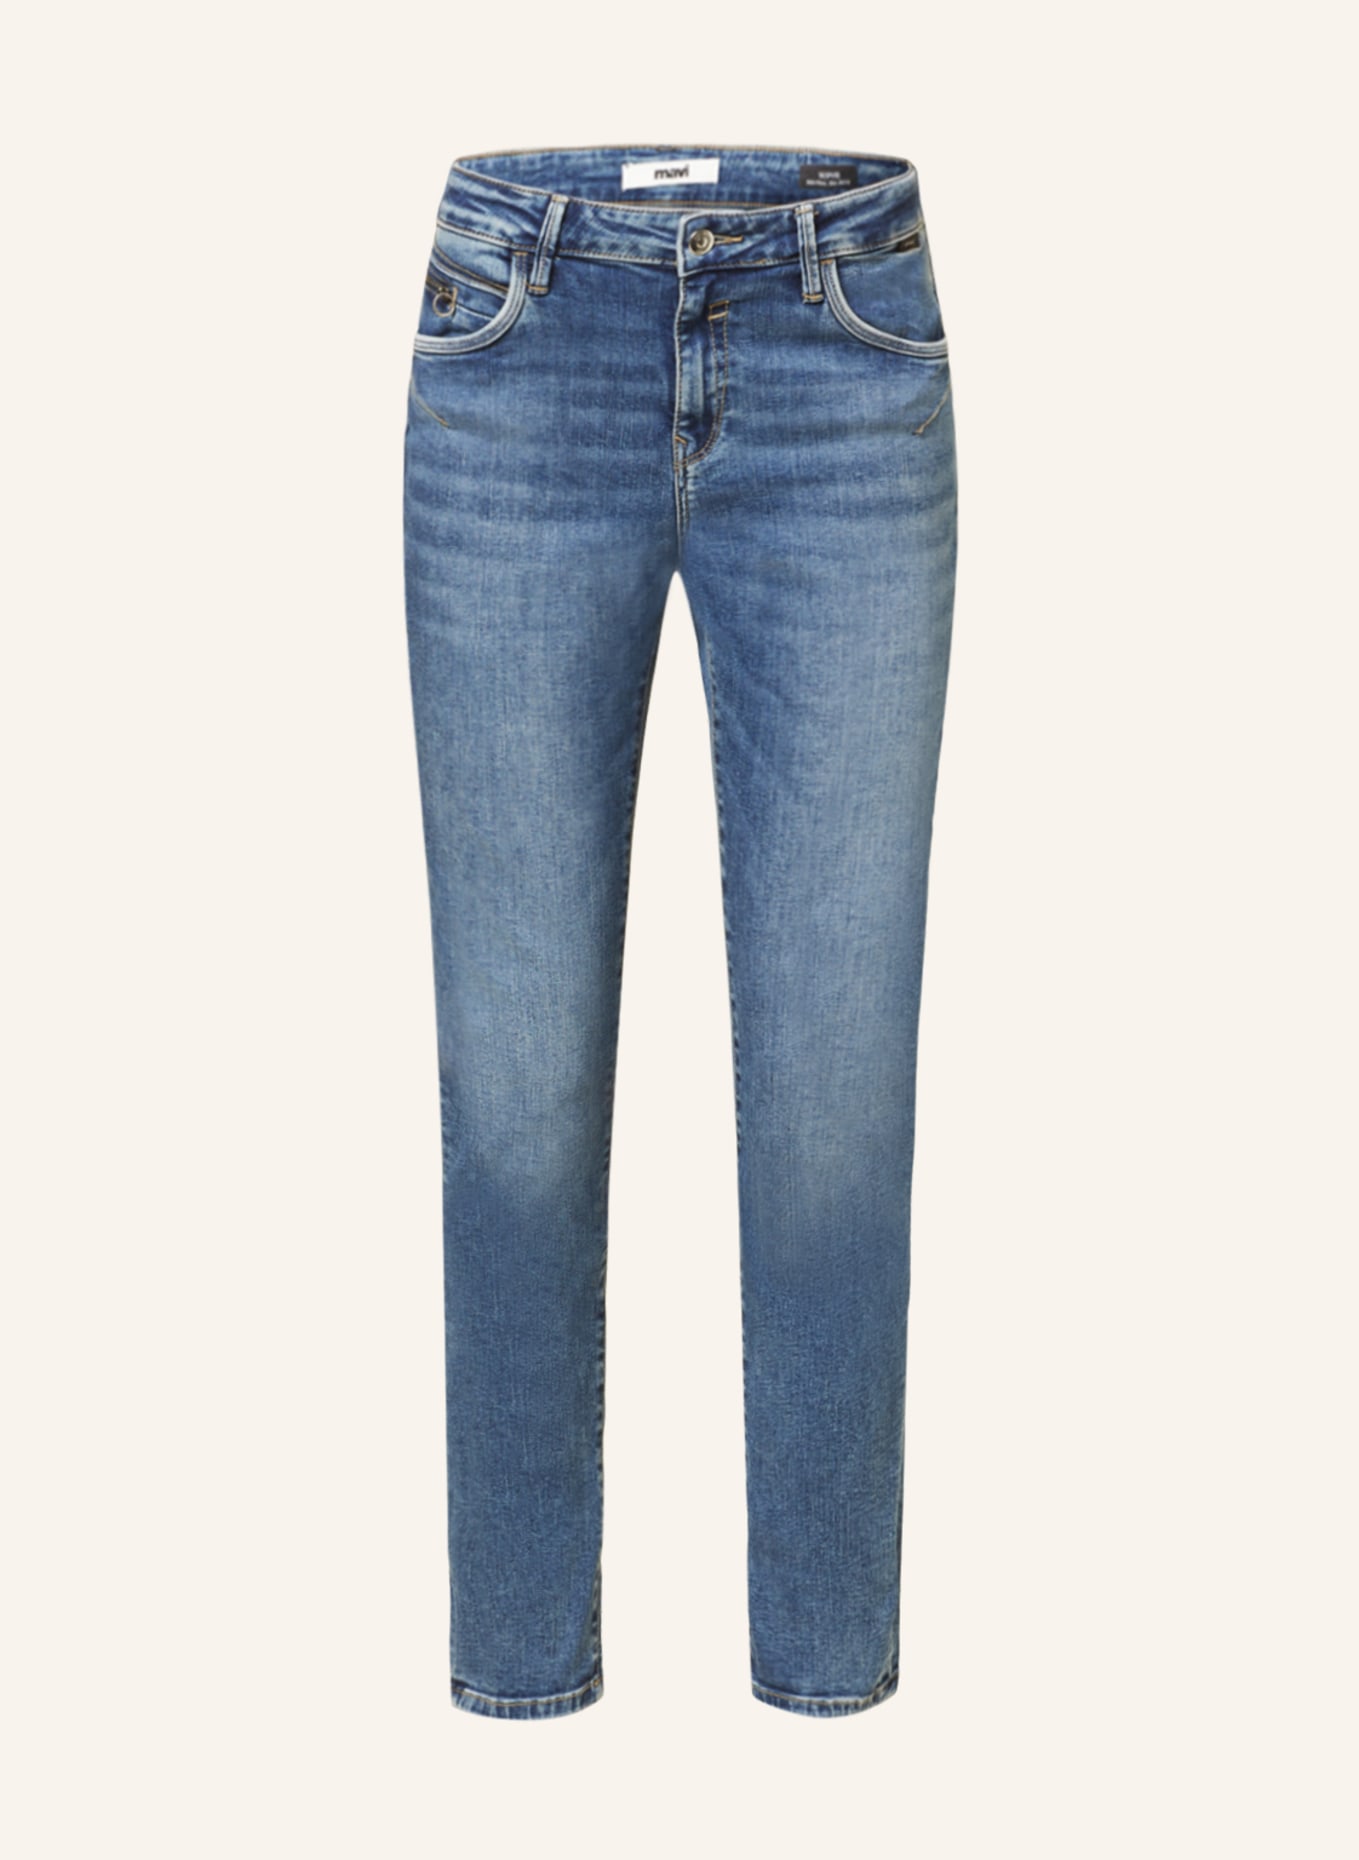 mavi Jeans SOPHIE, Farbe: 84996 dark brushed glam (Bild 1)